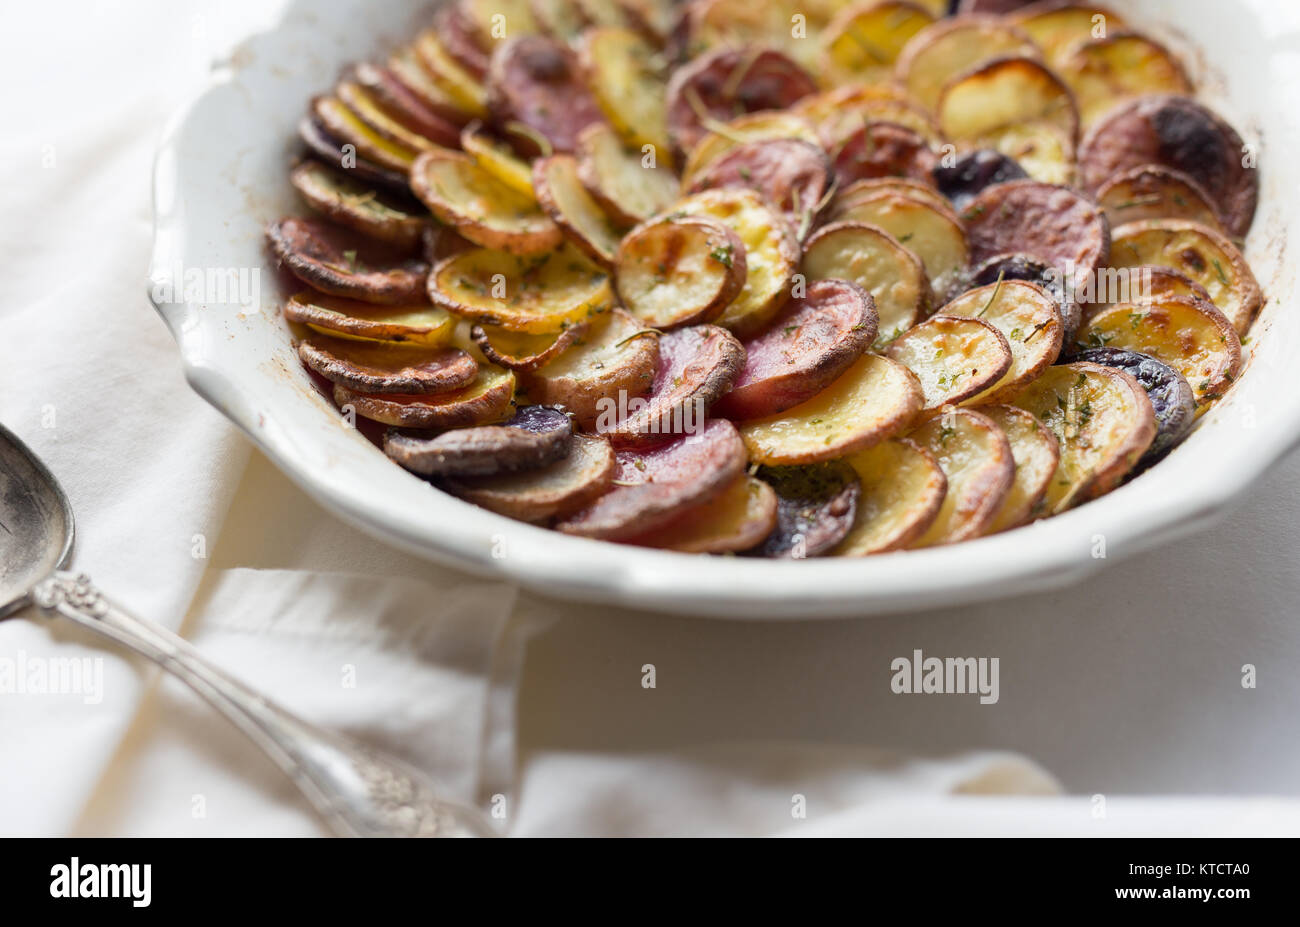 Weißen flachen Teller mit dünn geschnittenen Kartoffeln gefüllt. Mit Kräuterkruste und gegrillt. Stockfoto